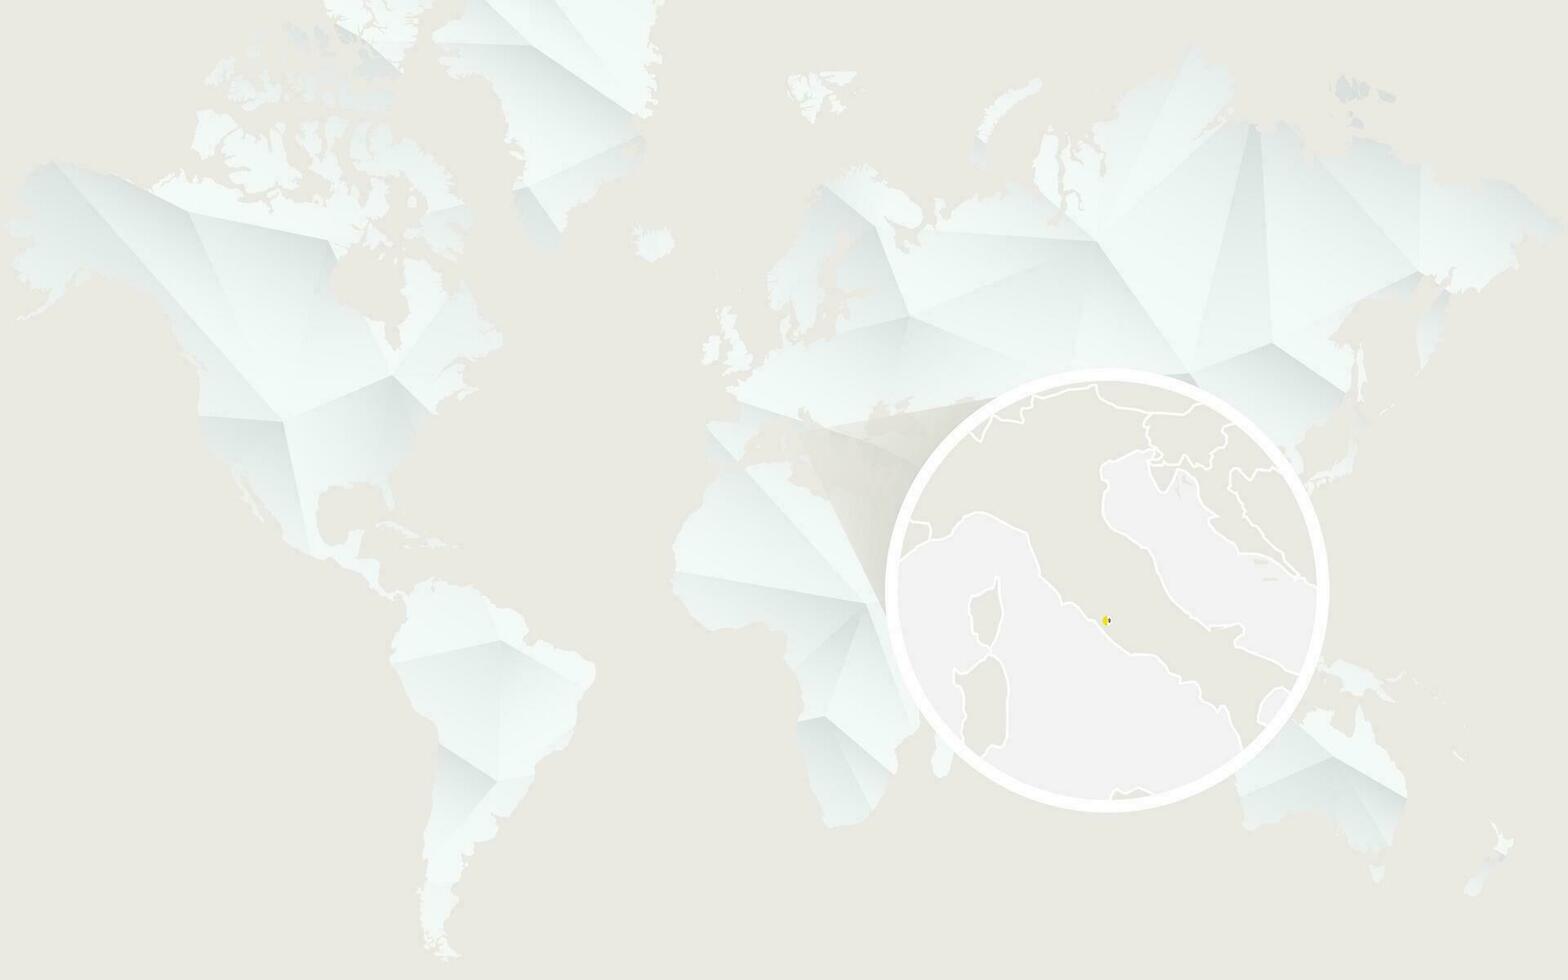 Vaticano cidade mapa com bandeira dentro contorno em branco poligonal mundo mapa. vetor